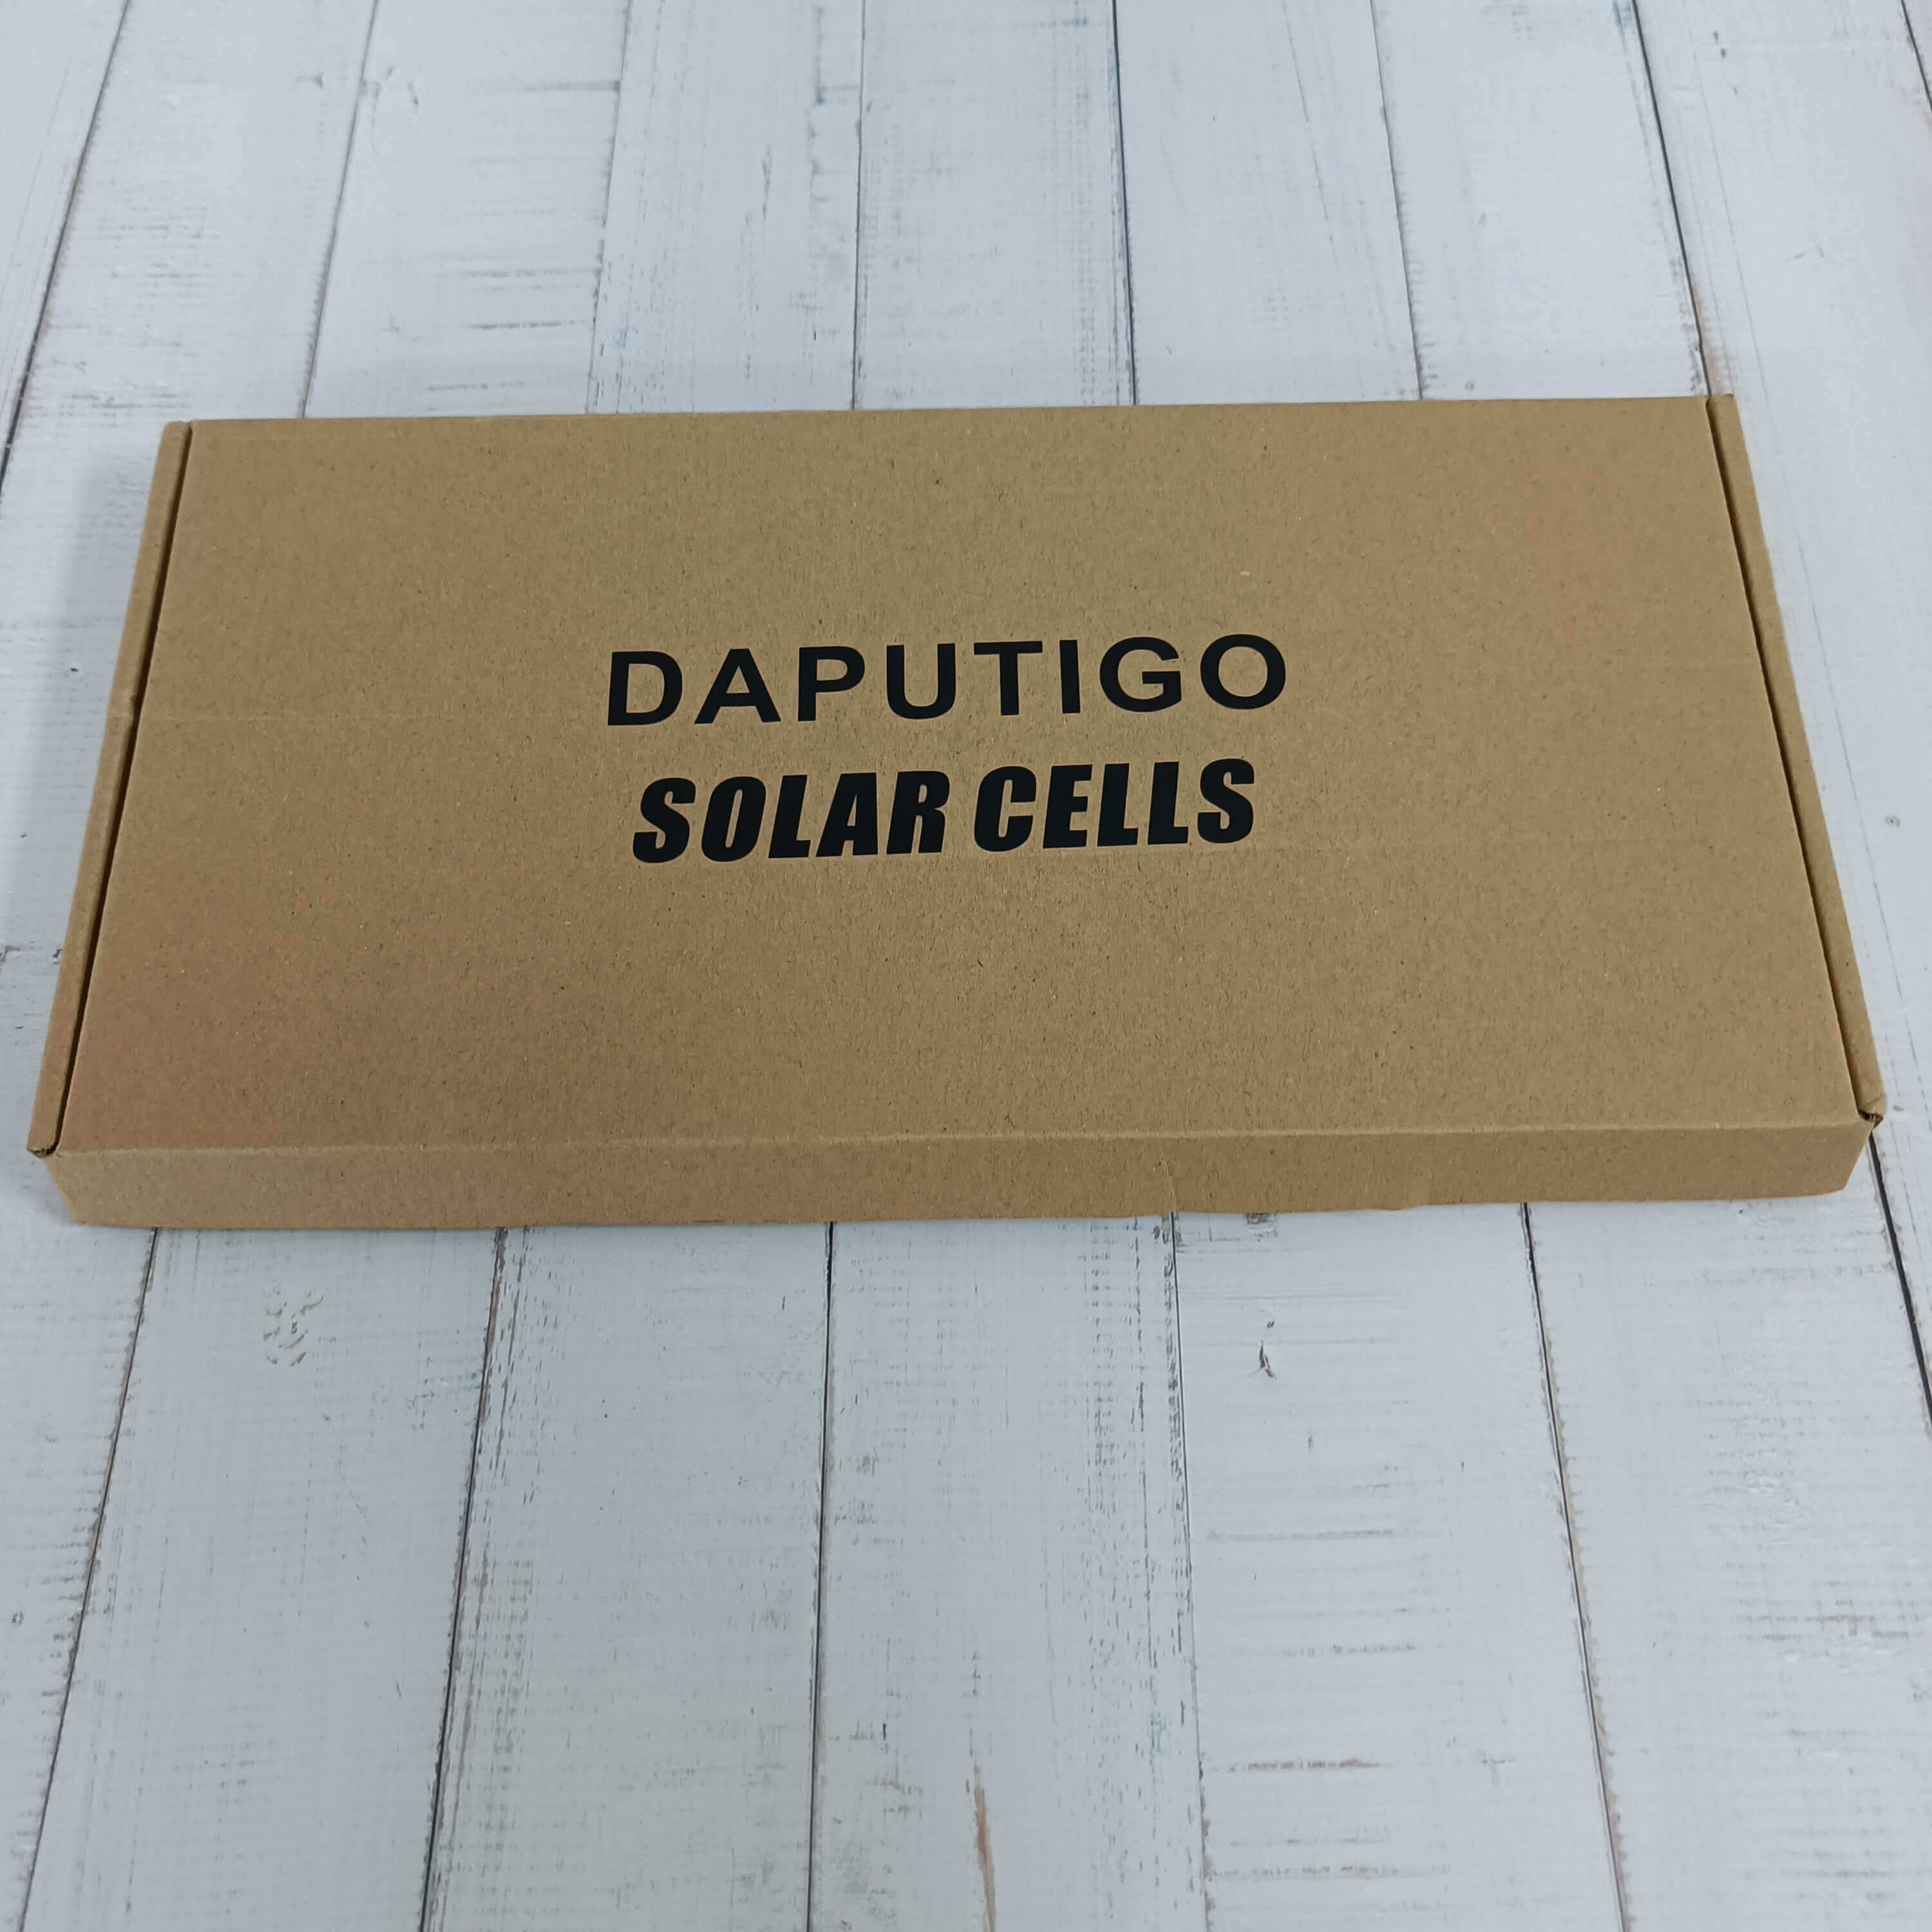 DAPUTIGO 10W 6V portable Monocrystalline-type solar panel